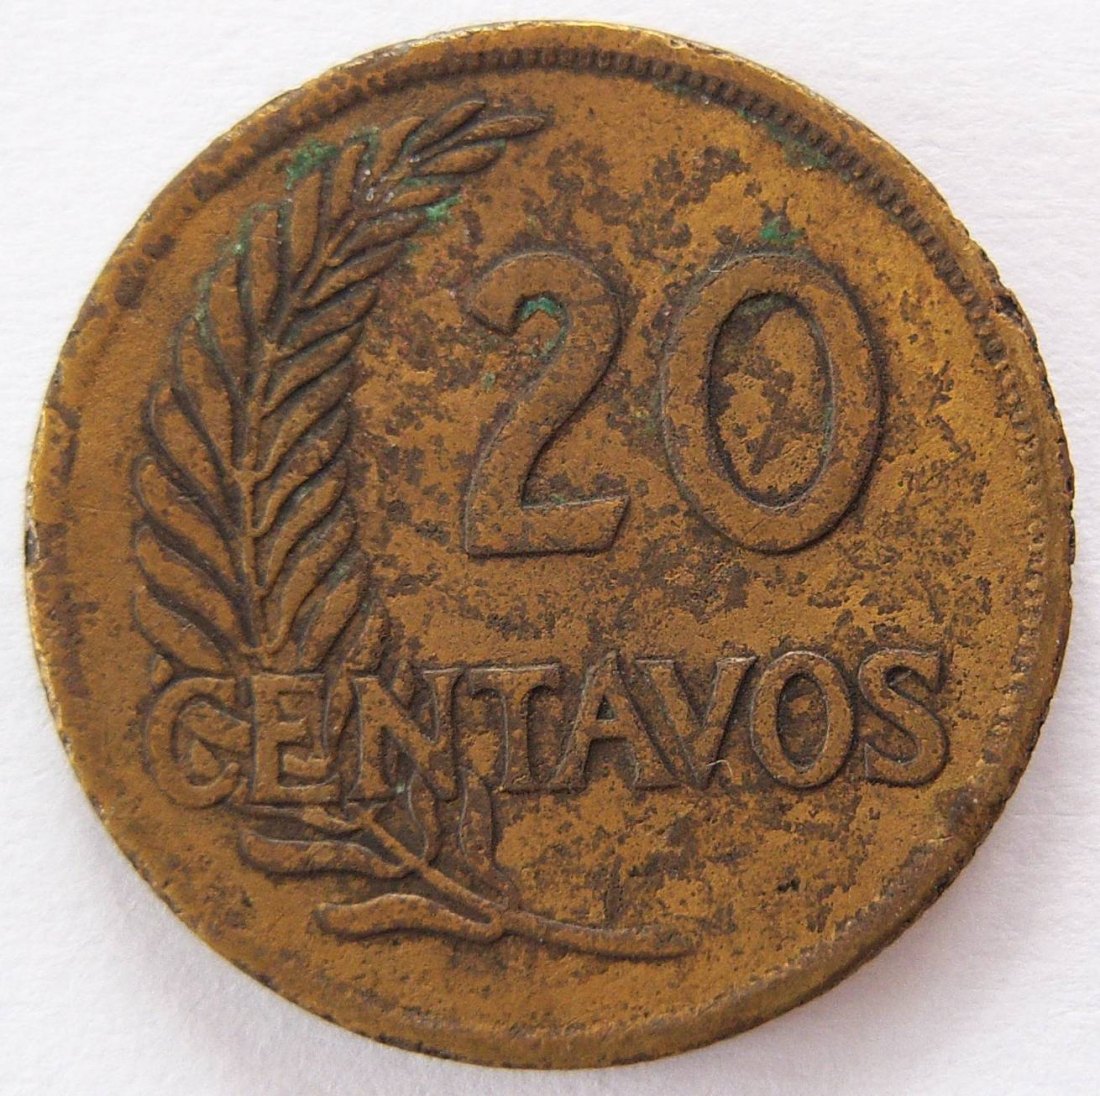  Peru 20 Centavos 1949   